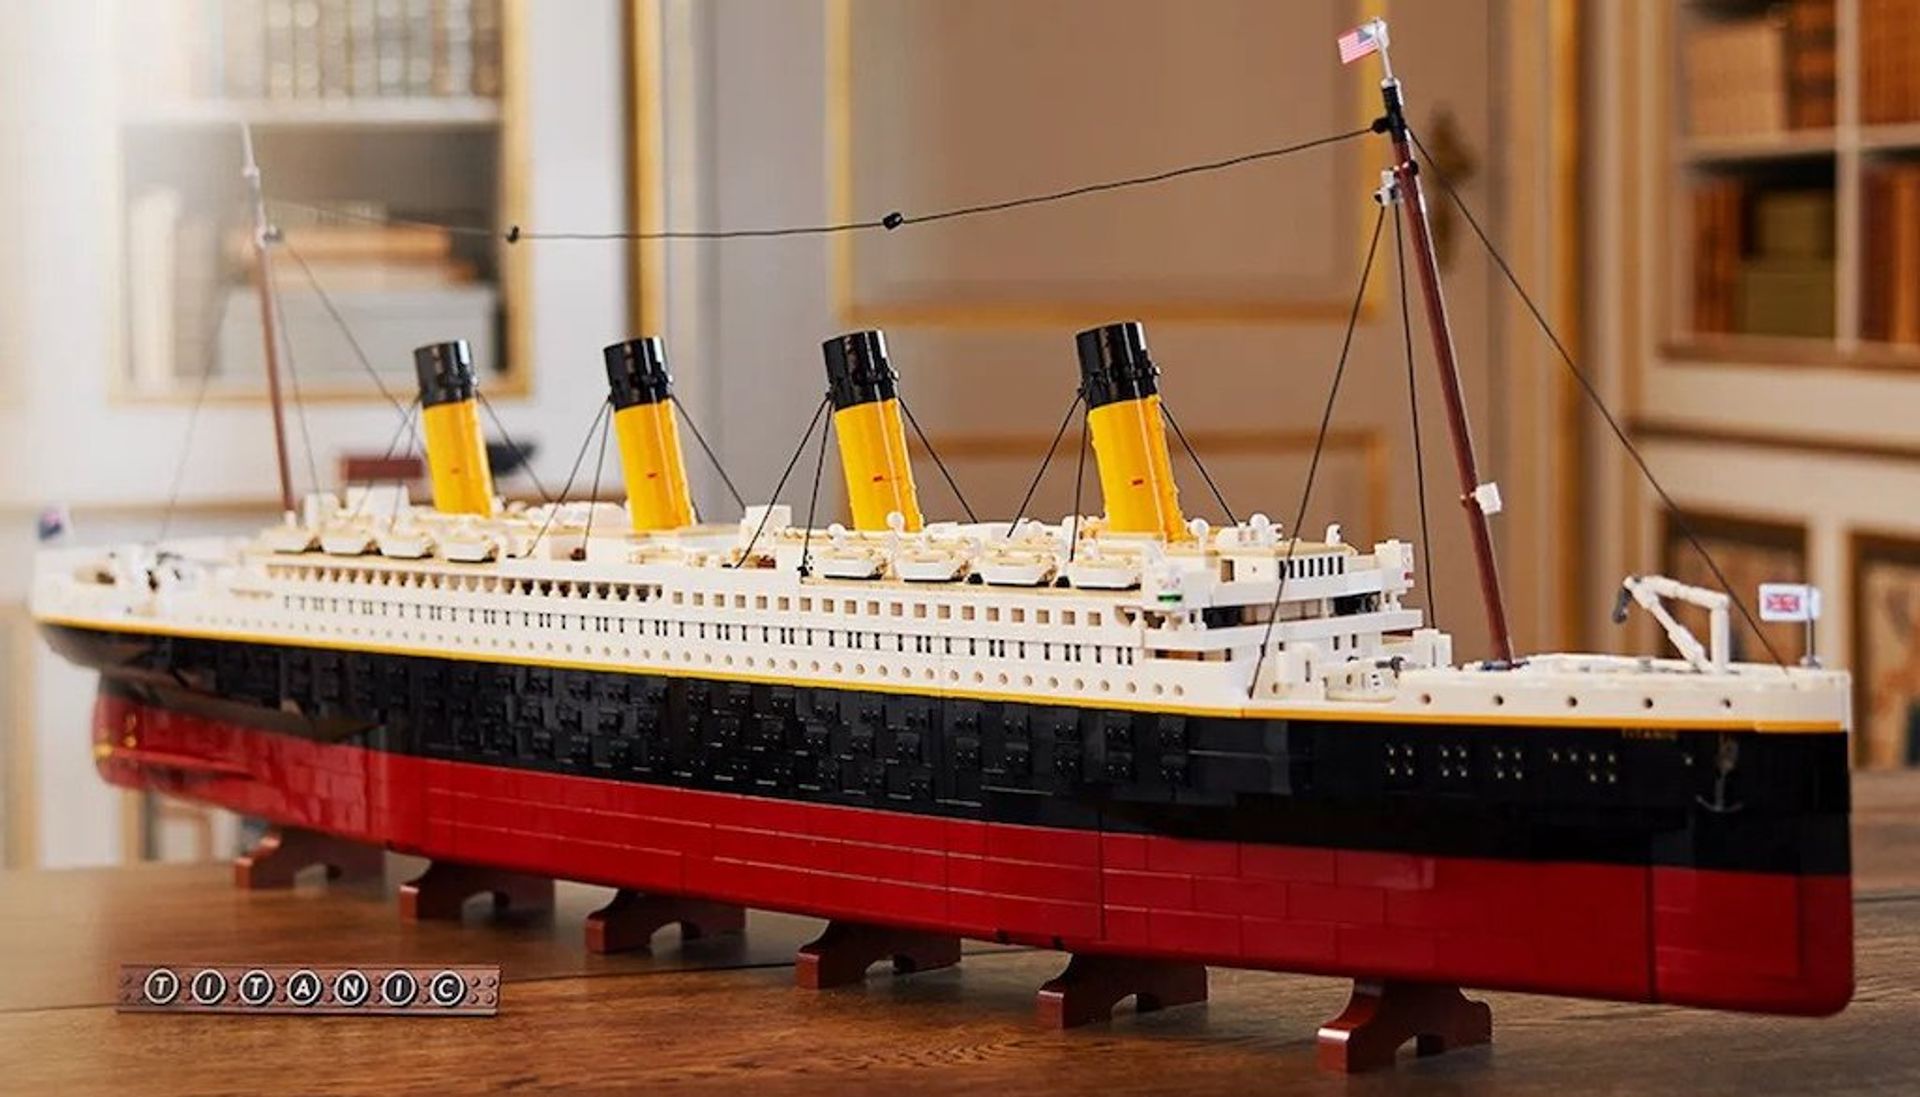 De LEGO de grootste ooit | Gewoonvoorhem